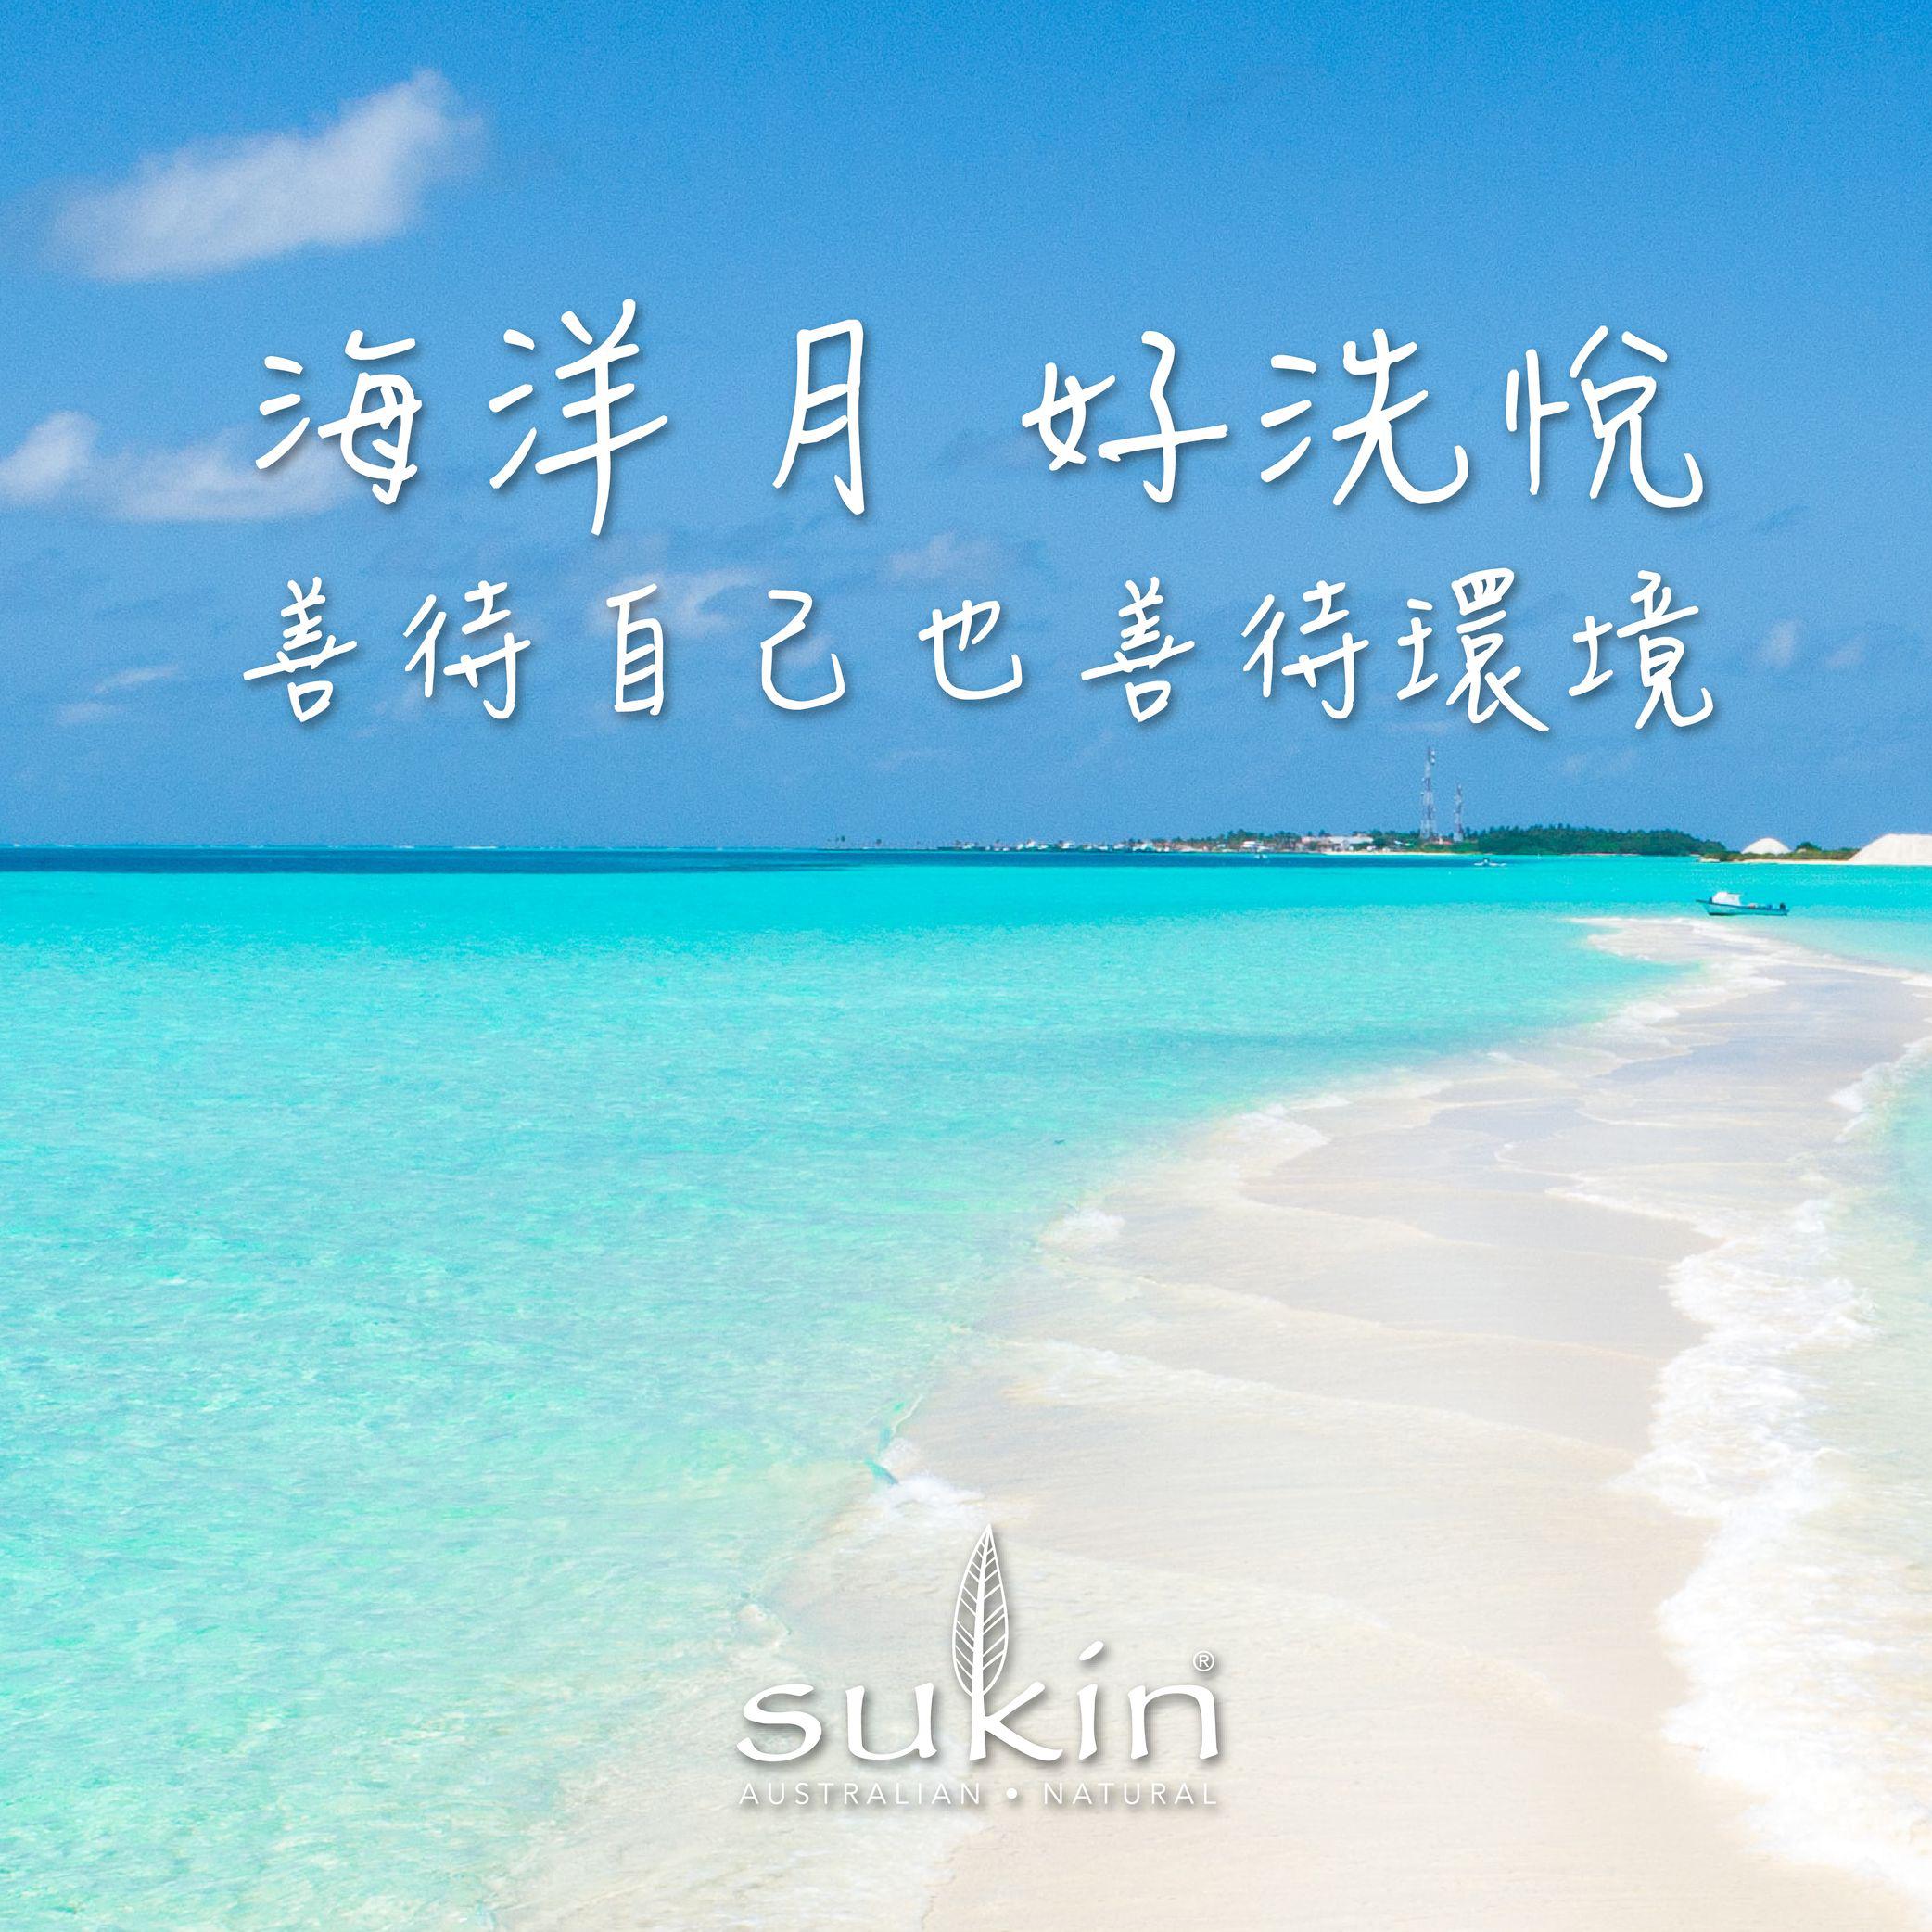 =Sukin 海洋月 好洗悅 善待自己 愛護海洋 與Sukin一起 有態度的美麗